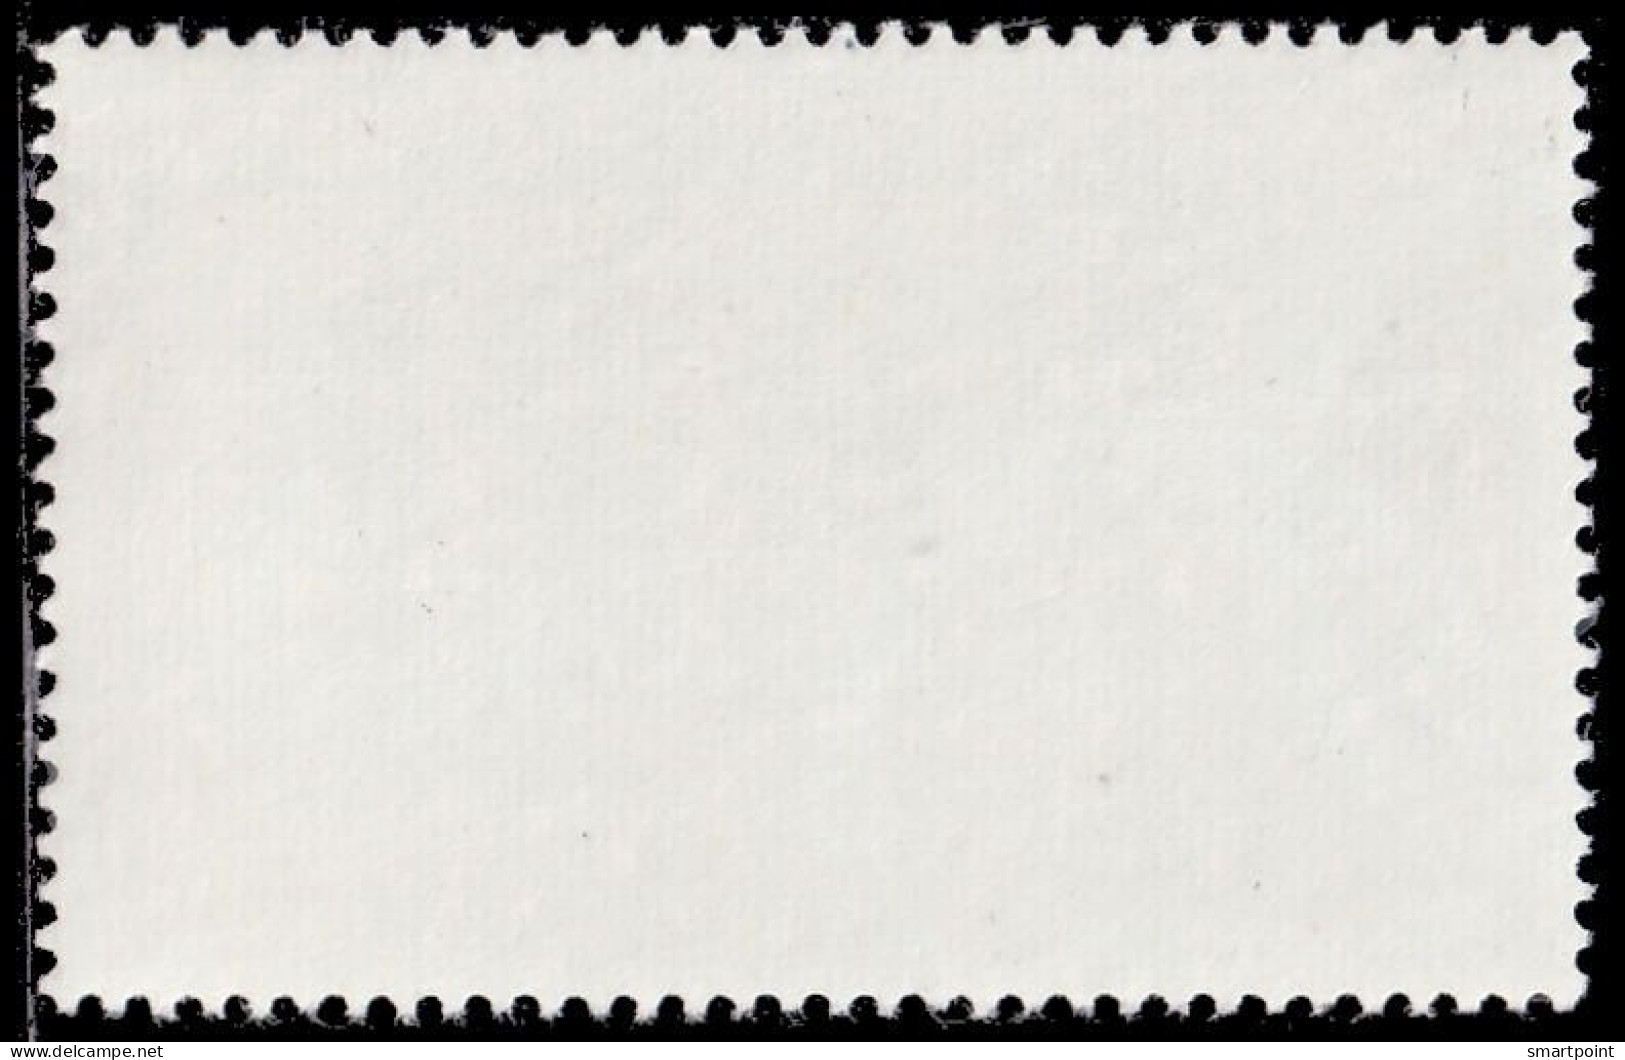 Thailand Stamp 1975 VIII (8th) SEAP Games (1st Series) 1.25 Baht - Unused - Thaïlande